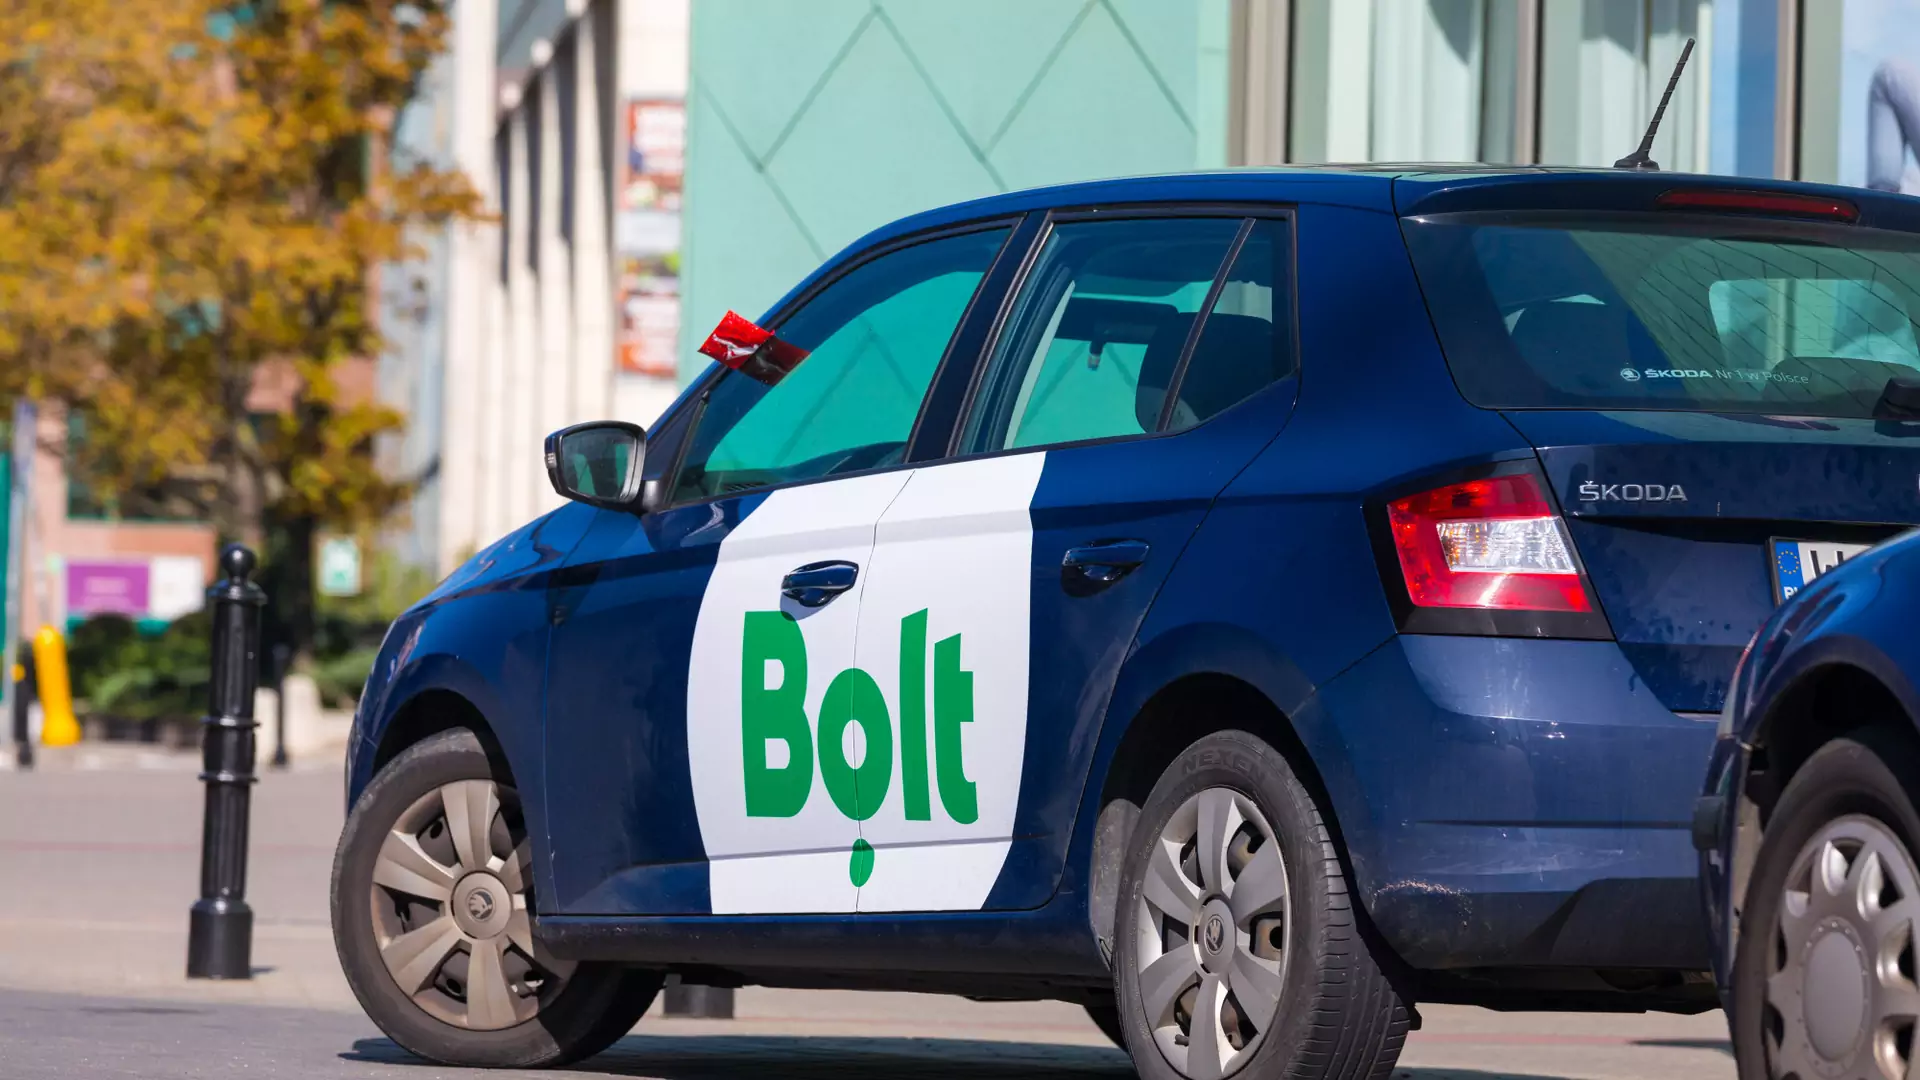 Kierowca Bolta, który molestował kobietę, został zatrzymany przez policję